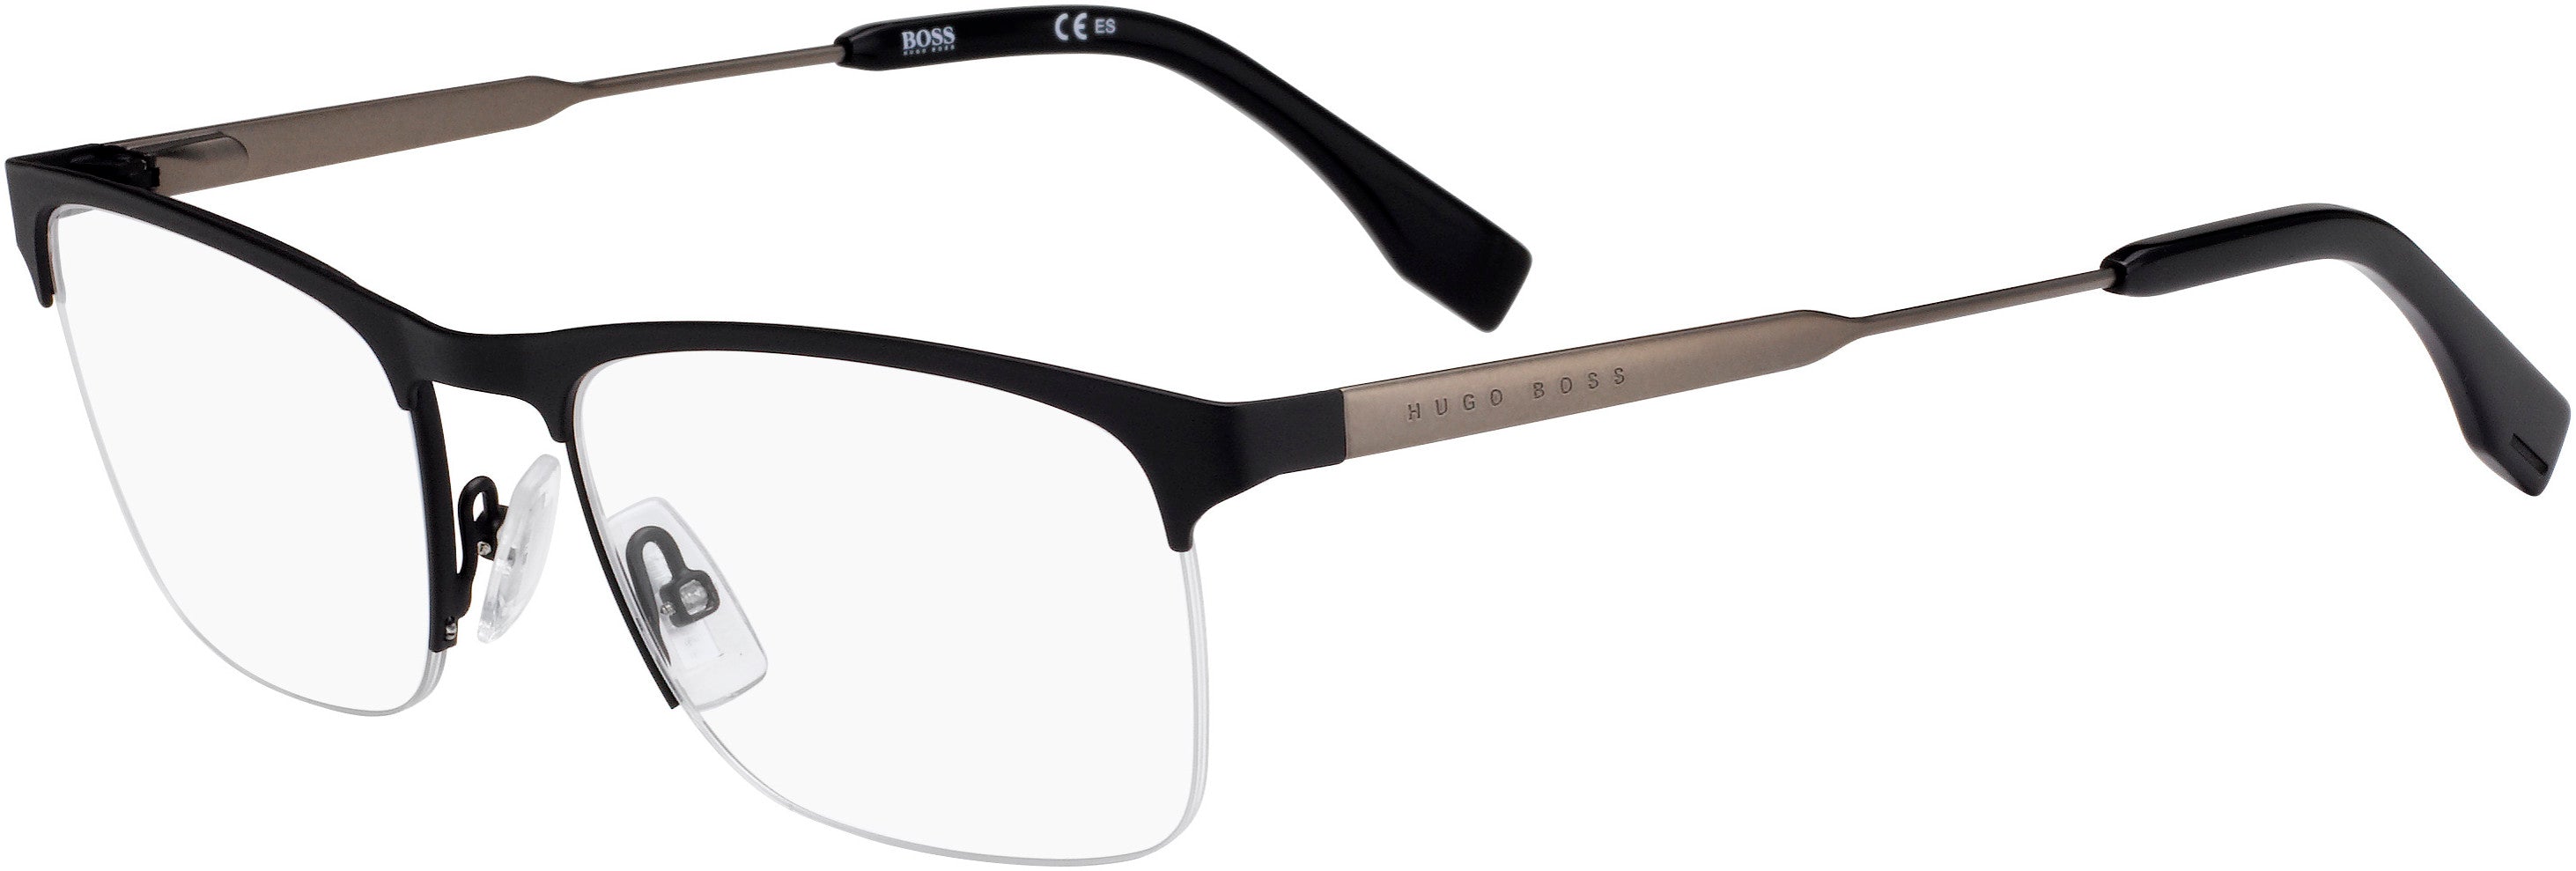 Boss (hub) Boss 0998 Rectangular Eyeglasses 0003-0003  Matte Black (00 Demo Lens)